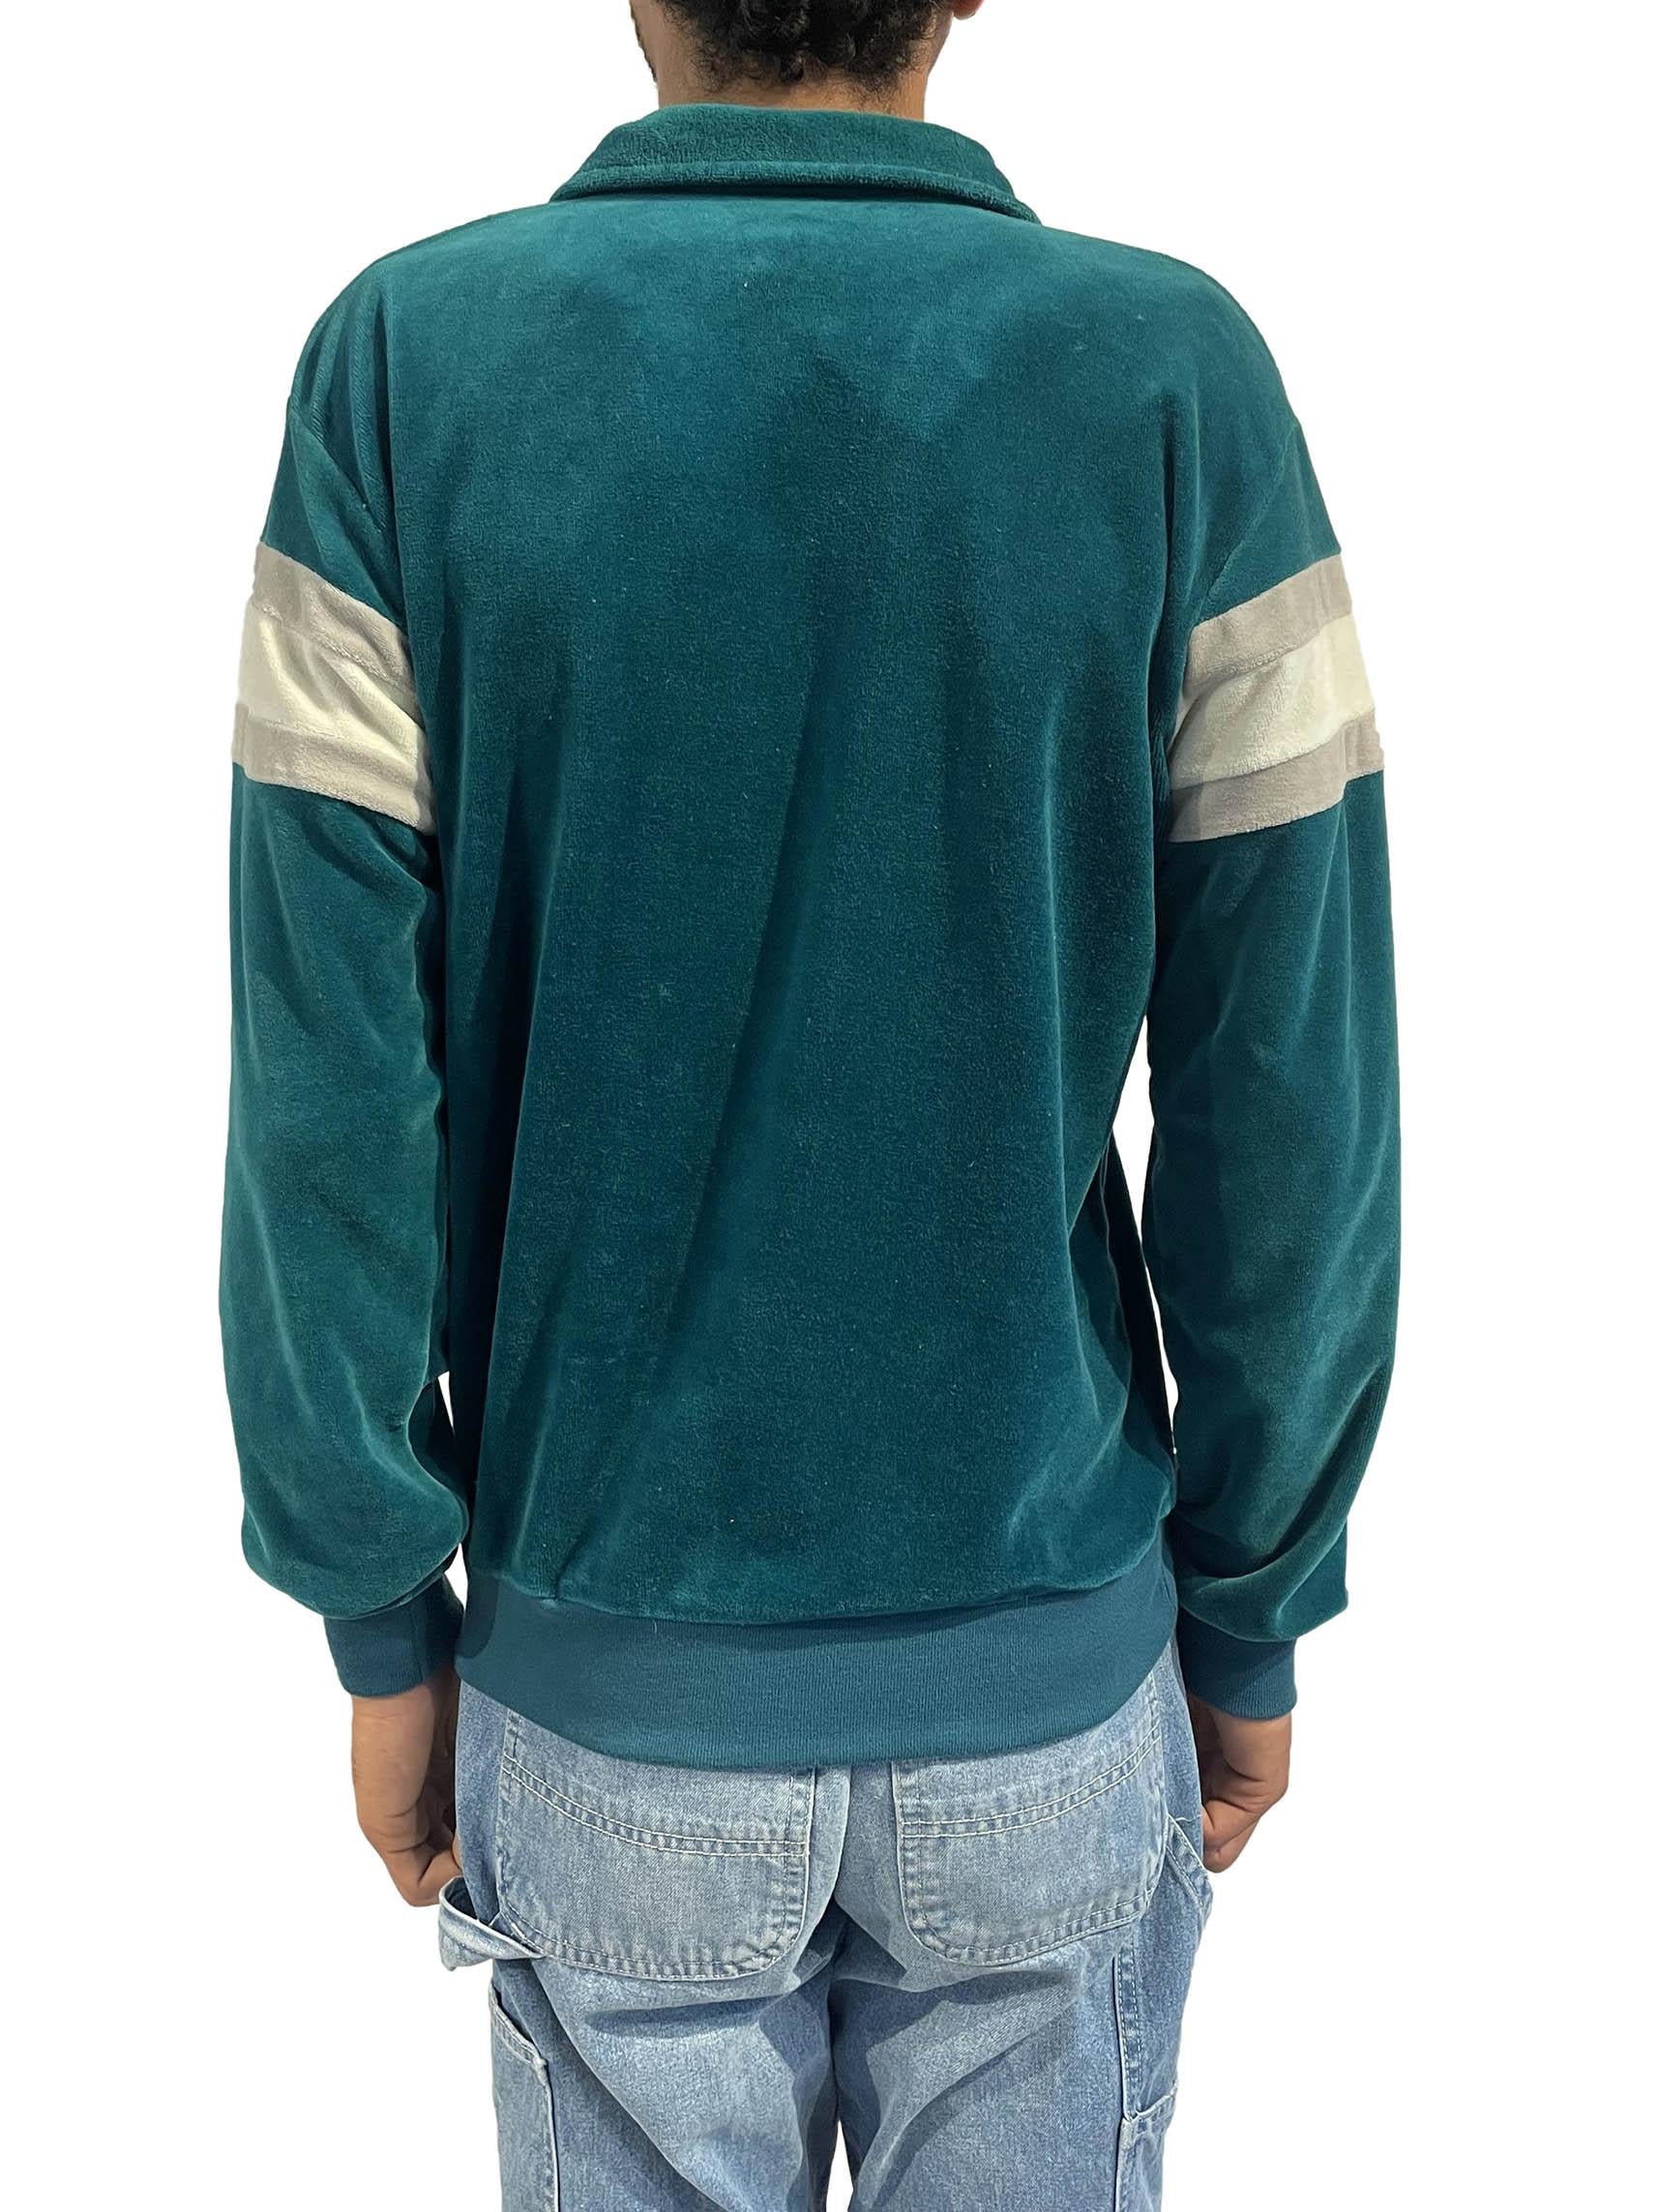 1980S Teal & White Stripe Poly/Cotton Velvet Pull Over Sweatshirt 3